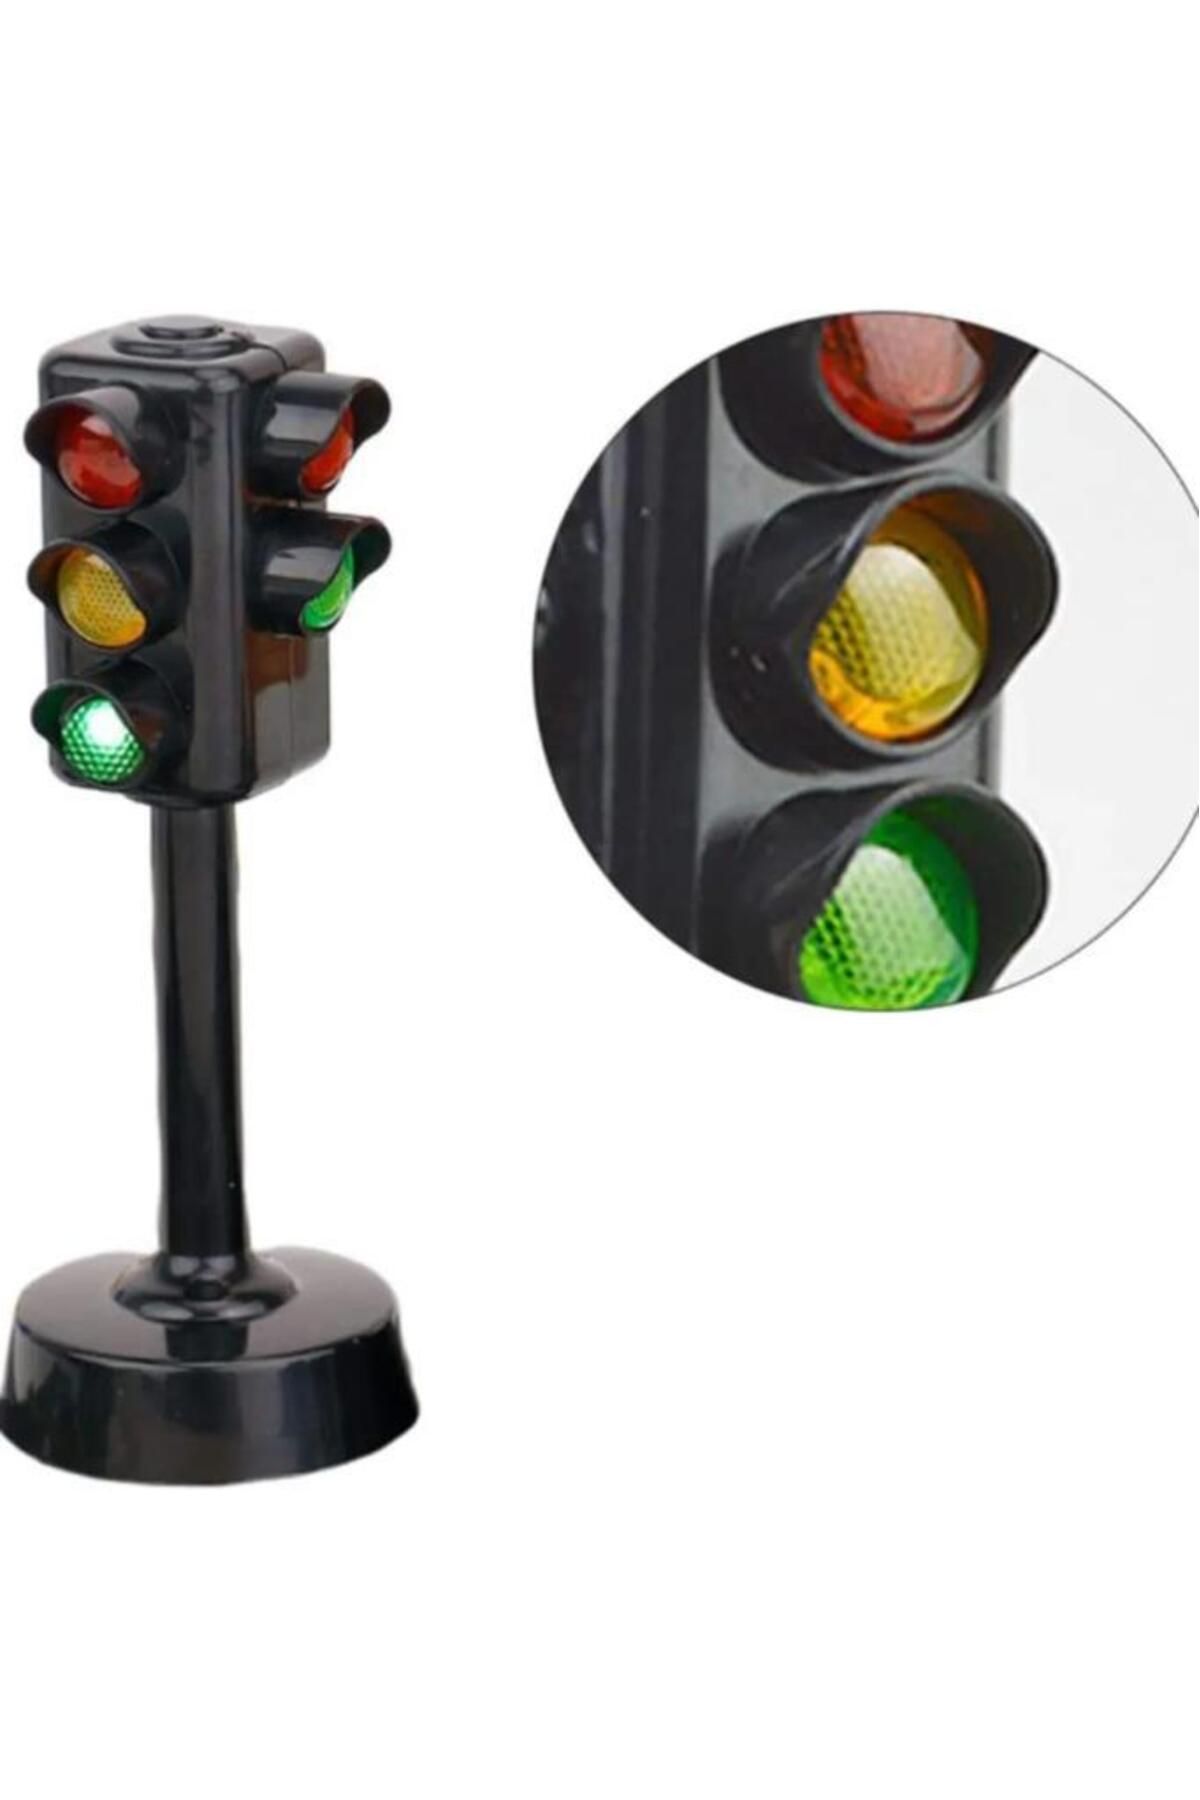 Birlik Oyuncak Sesli Işıklı Trafik Lambası 5588-21, Çocuklar İçin Oyuncak Trafik İşaret Aksesuarı(12